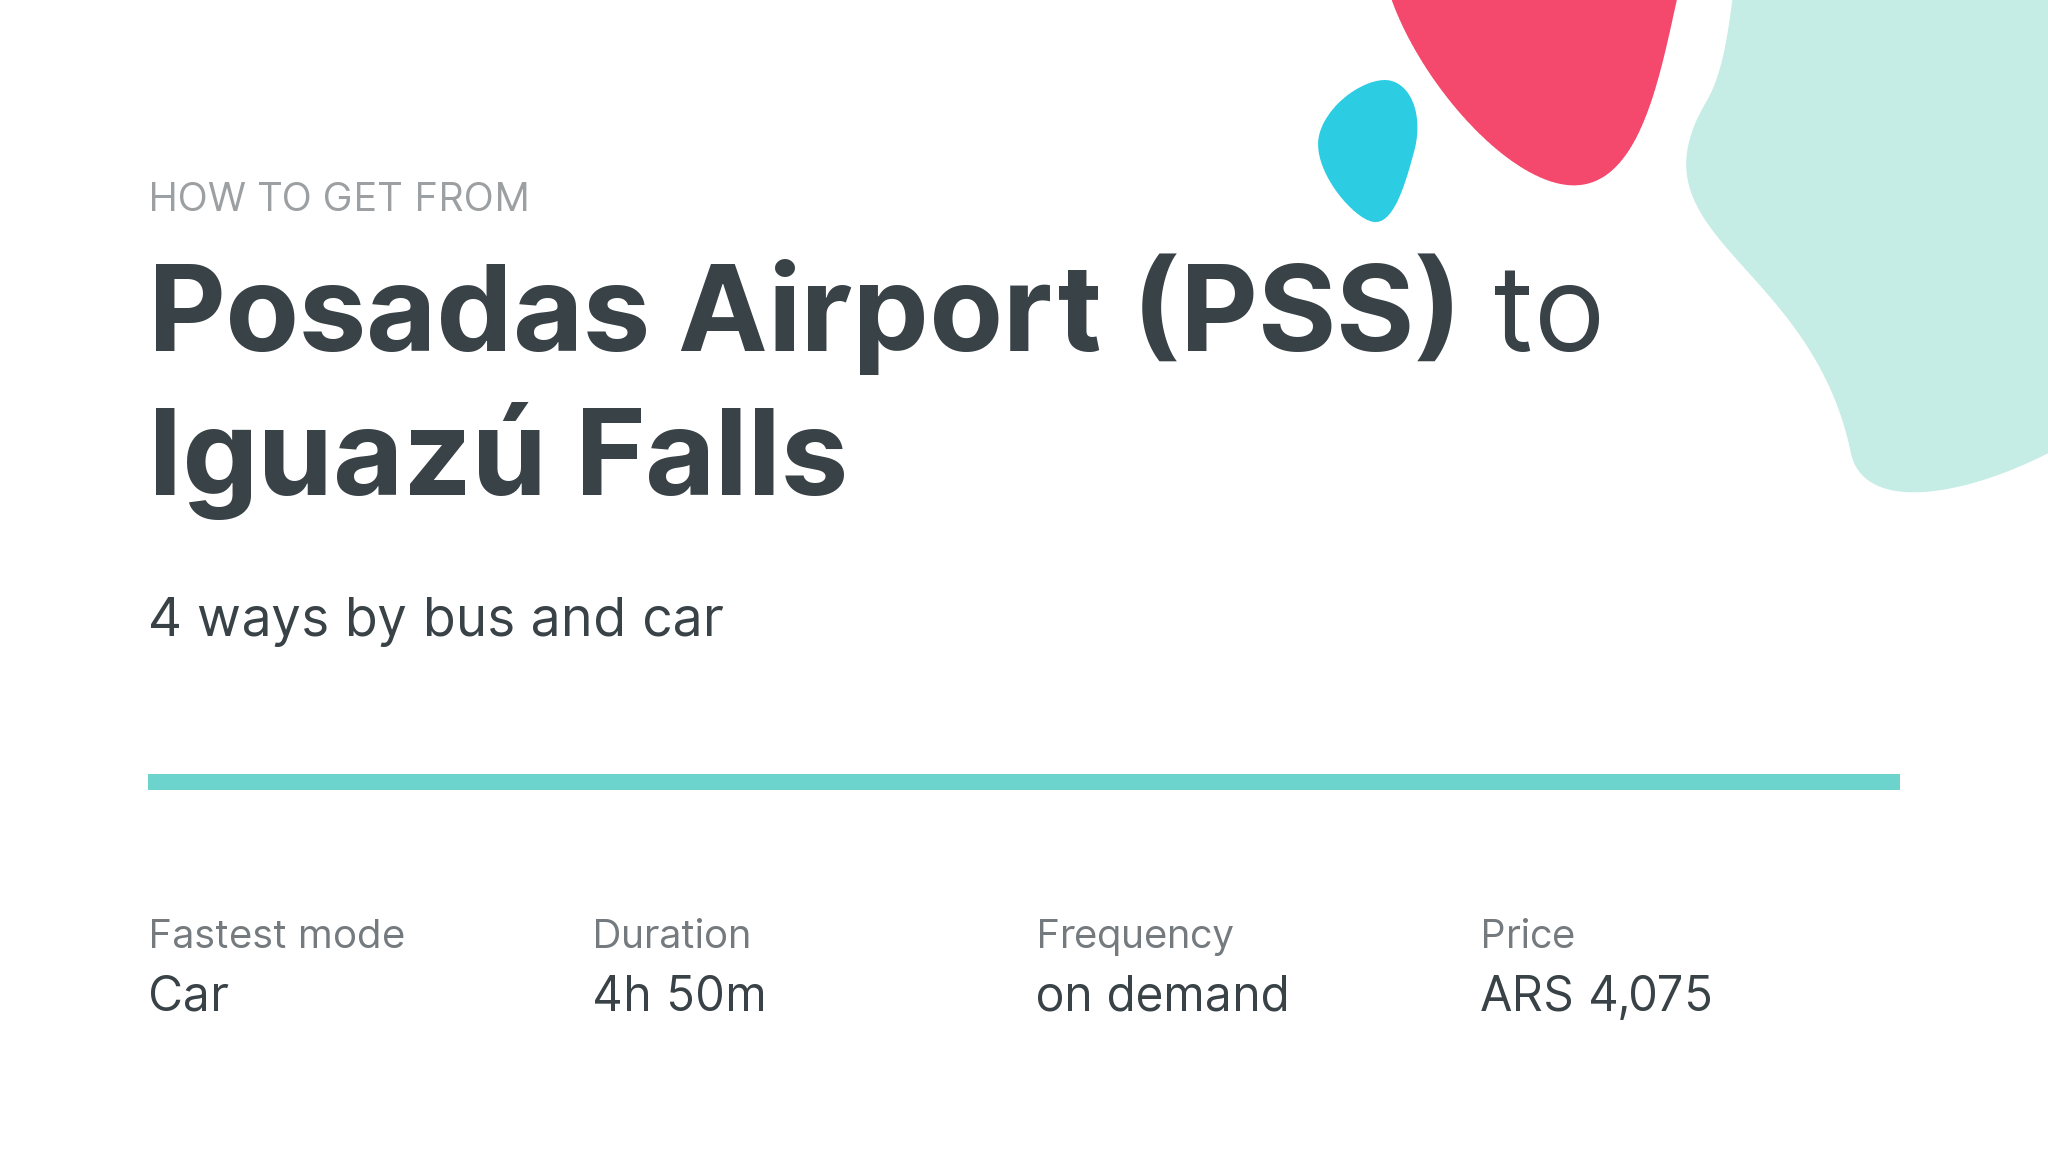 How do I get from Posadas Airport (PSS) to Iguazú Falls